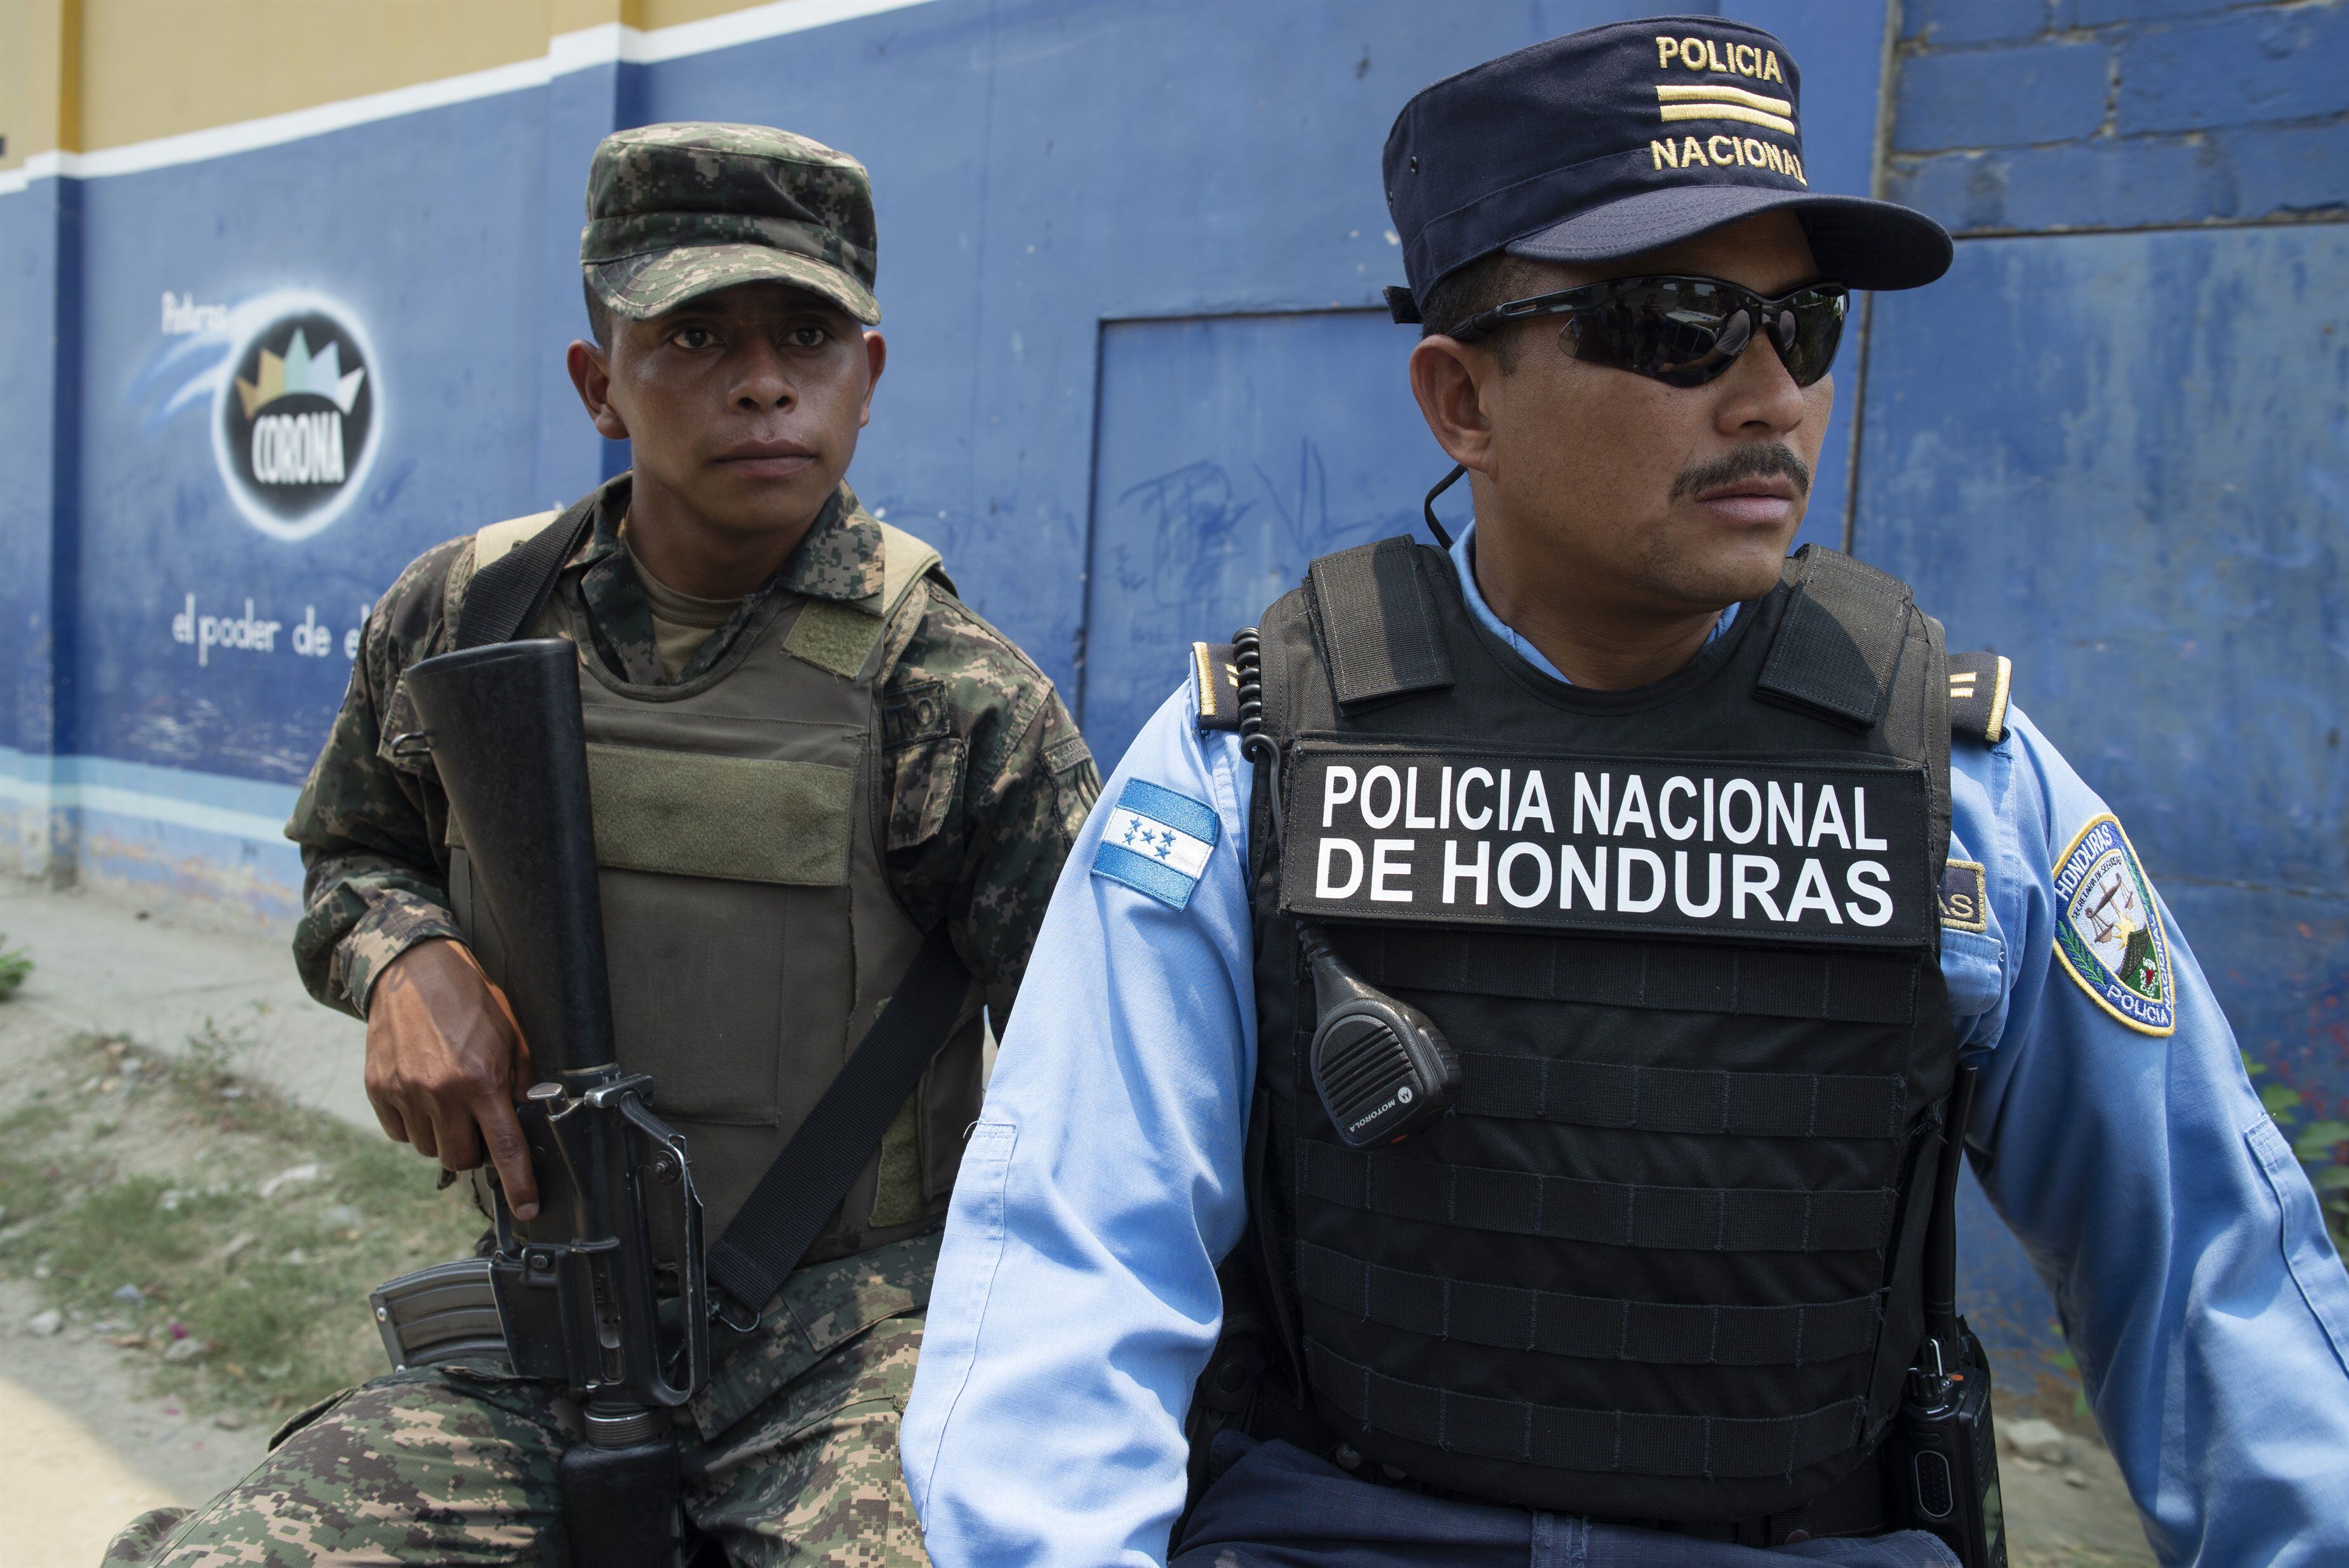 07/12/2022 Un militar y un policía hondureños (archivo)POLITICA CENTROAMÉRICA HONDURAS INTERNACIONALGILES CAMPBELL / ZUMA PRESS / CONTACTOPHOTO